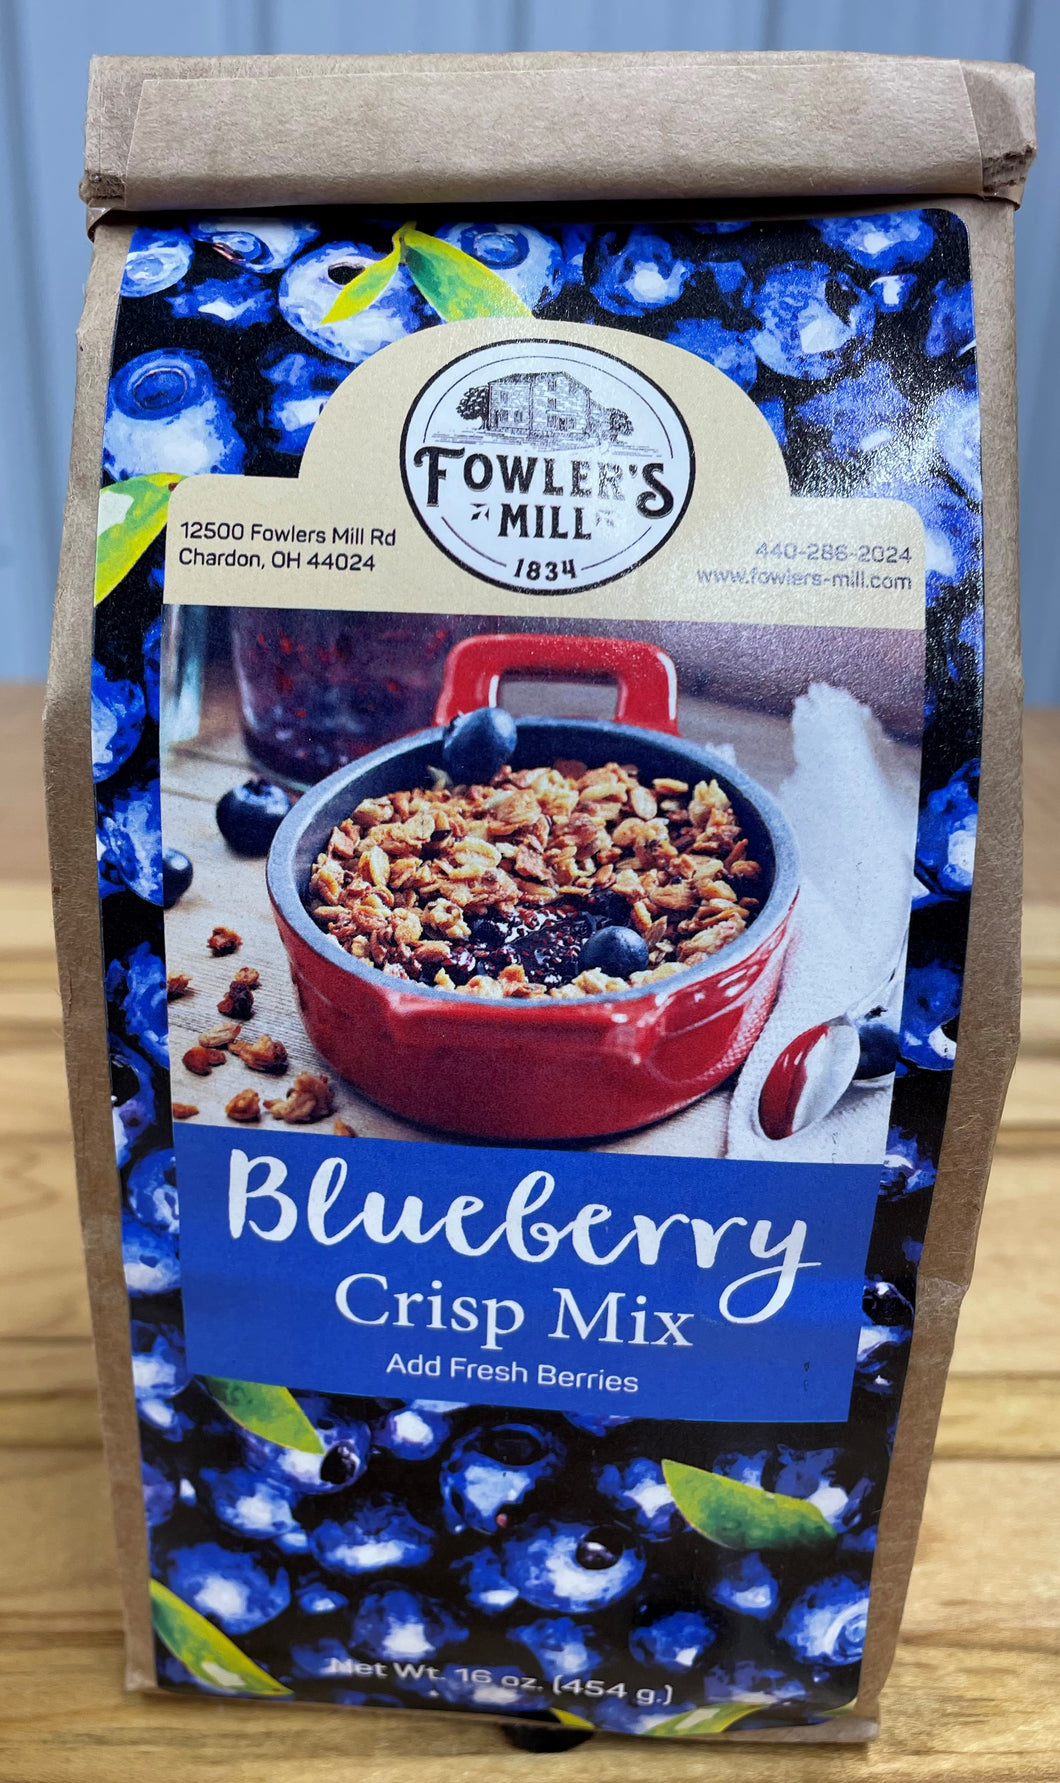 Fowler's Mill Blueberry Crisp Mix